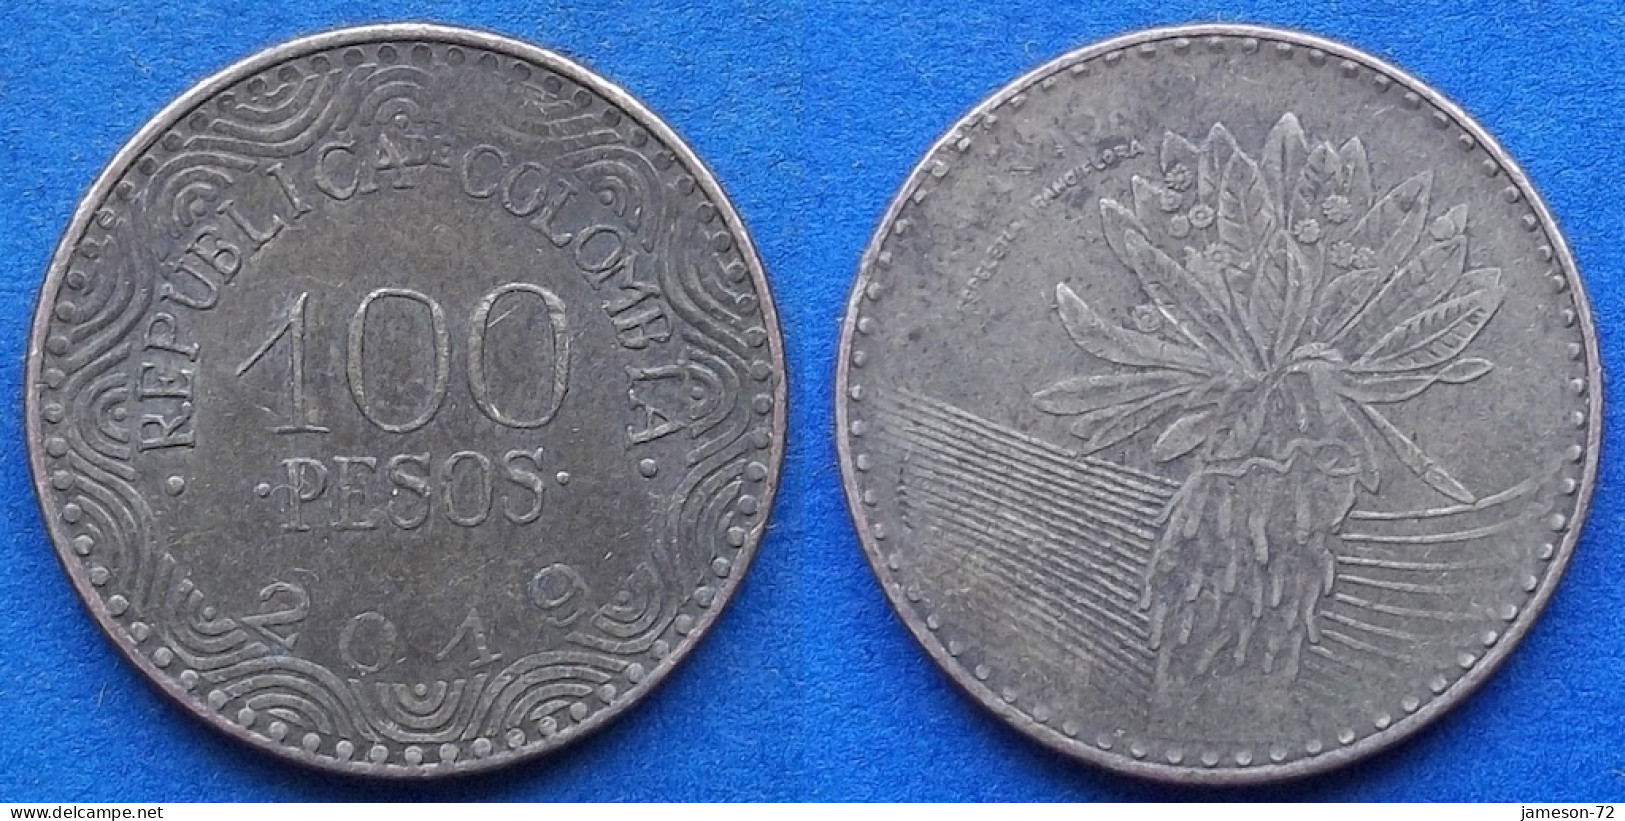 COLOMBIA - 100 Pesos 2019 "Frailejon" KM# 296 Republic - Edelweiss Coins - Kolumbien